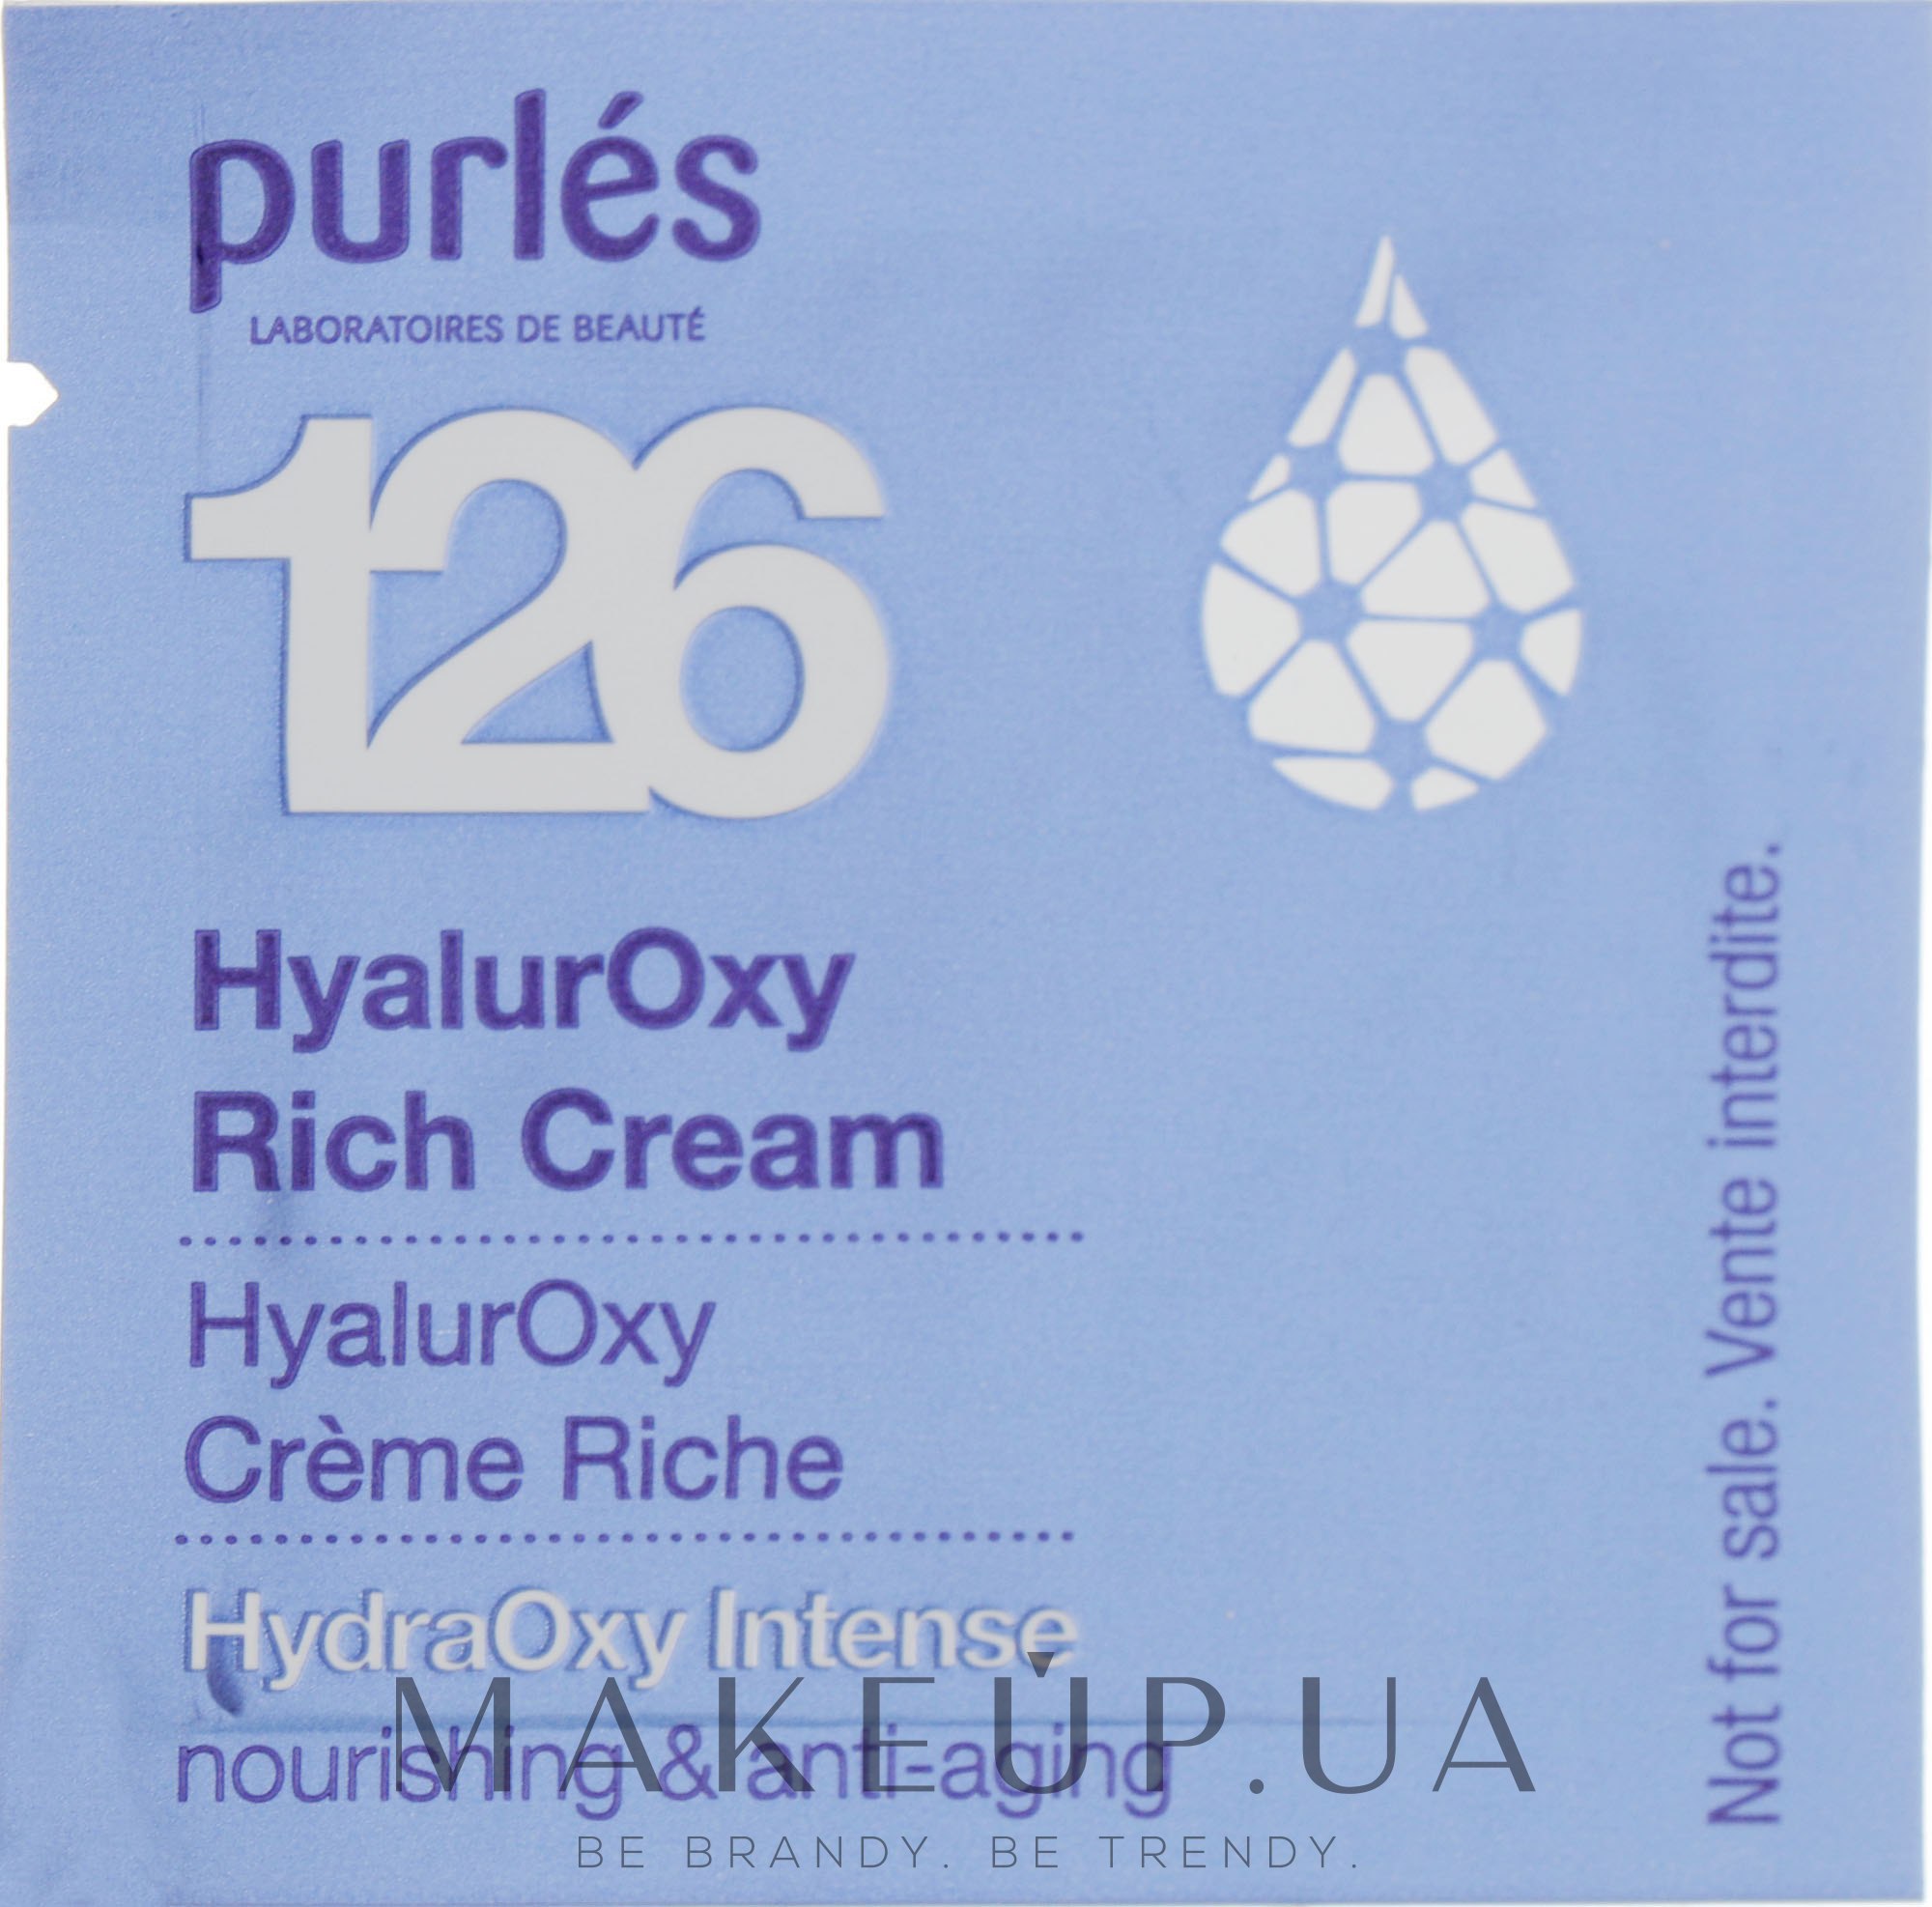 Гиалуроновый крем увлажняющий и питательный - Purles 126 HydraOxy Intense HyalurOxy Rich Cream (пробник) — фото 1ml